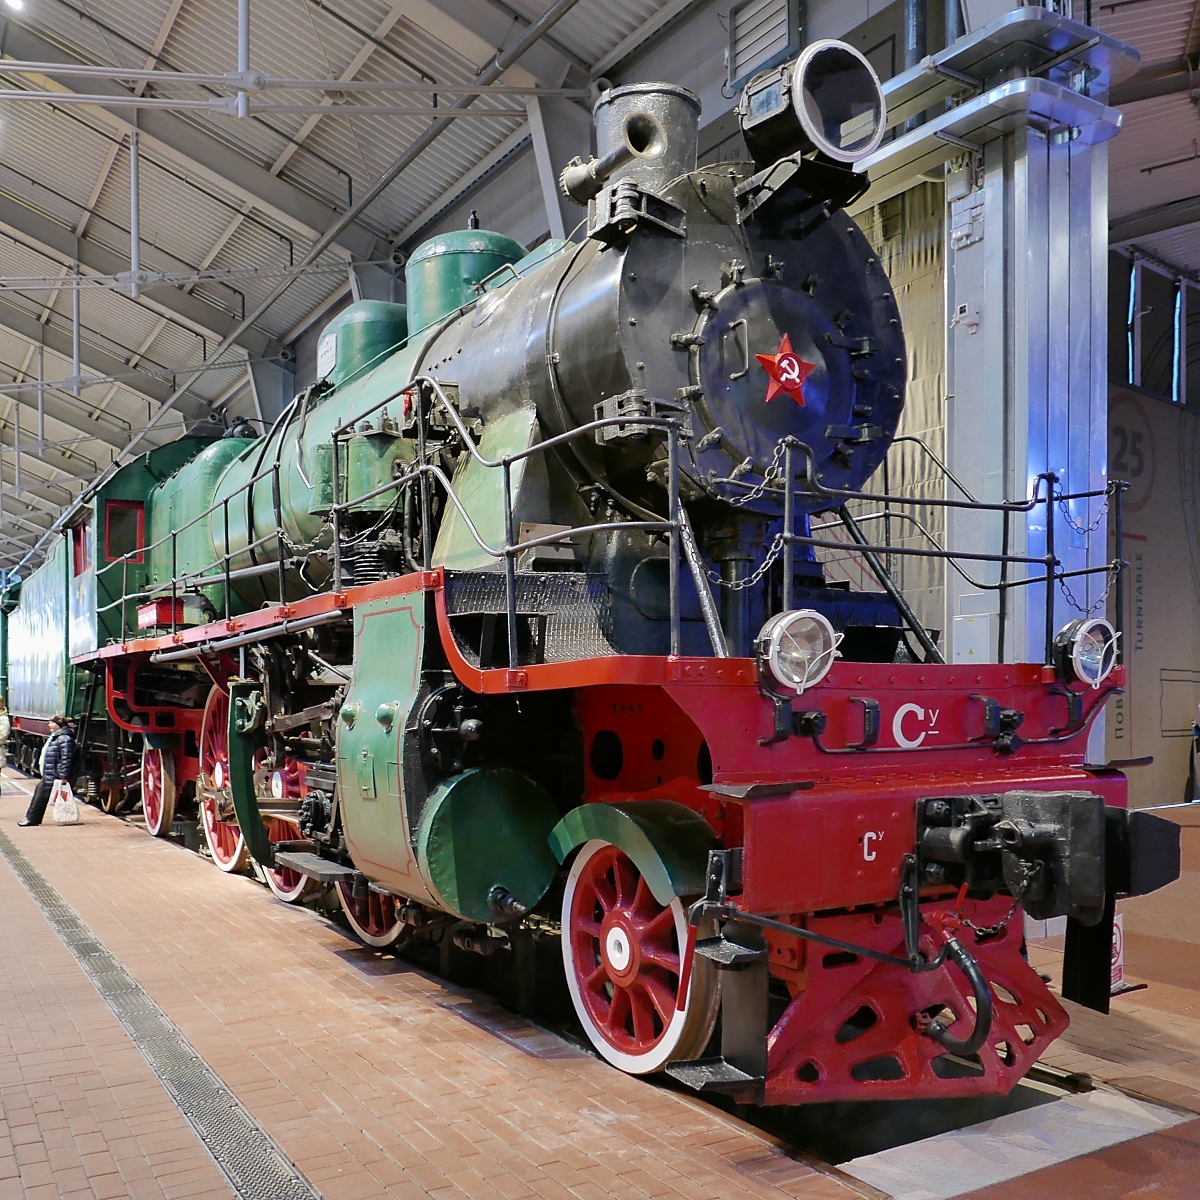 Personenzug-Dampflok Су(SU) 253-15, gebaut 1950, im Russischen Eisenbahnmuseum in St. Petersburg, 4.11.2017